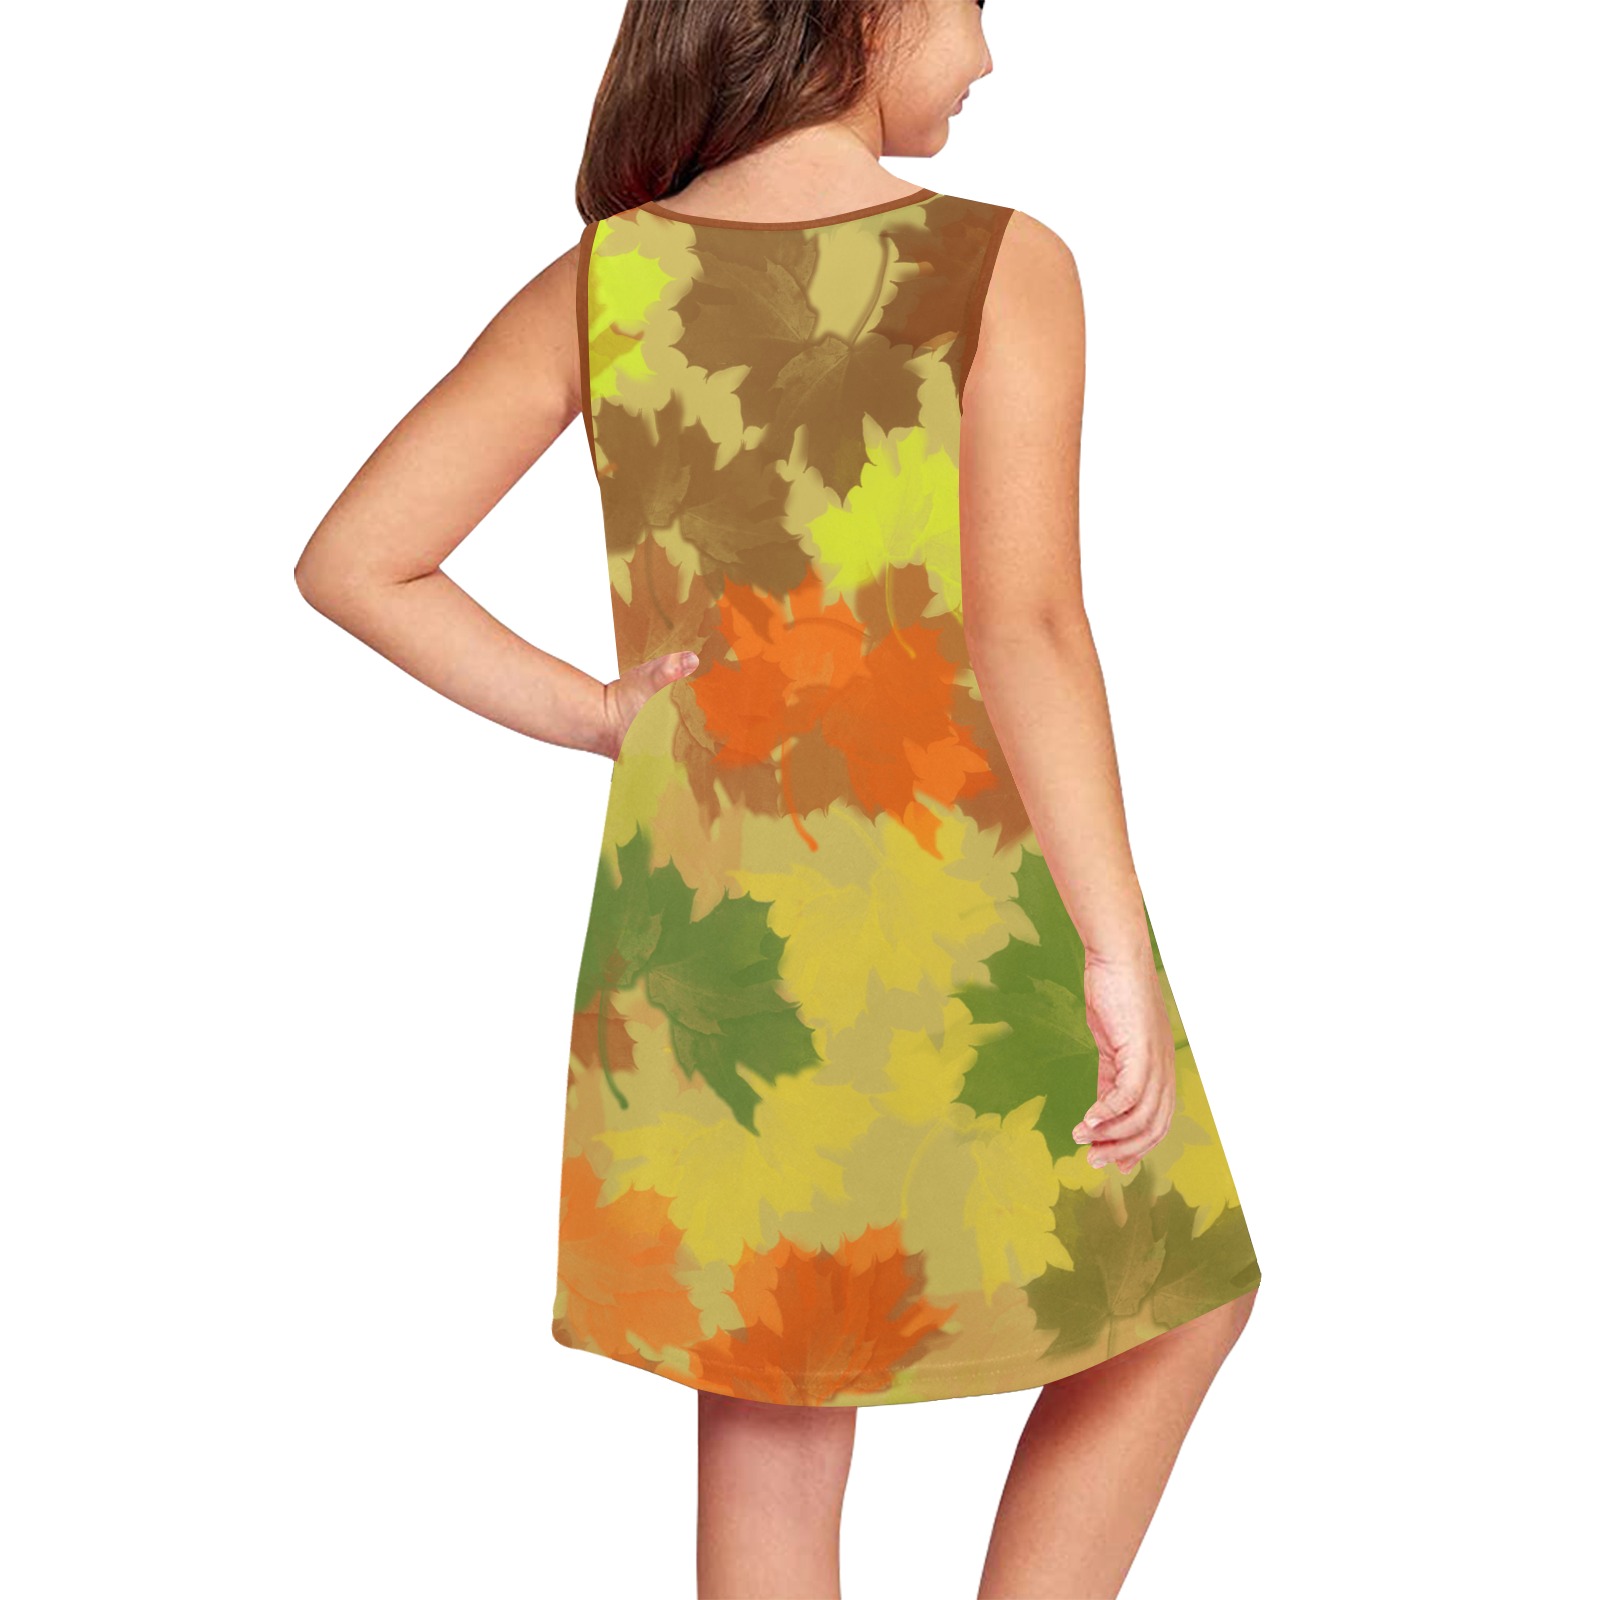 Autumn Leaves / Fall Leaves Girls' Sleeveless Dress (Model D58)